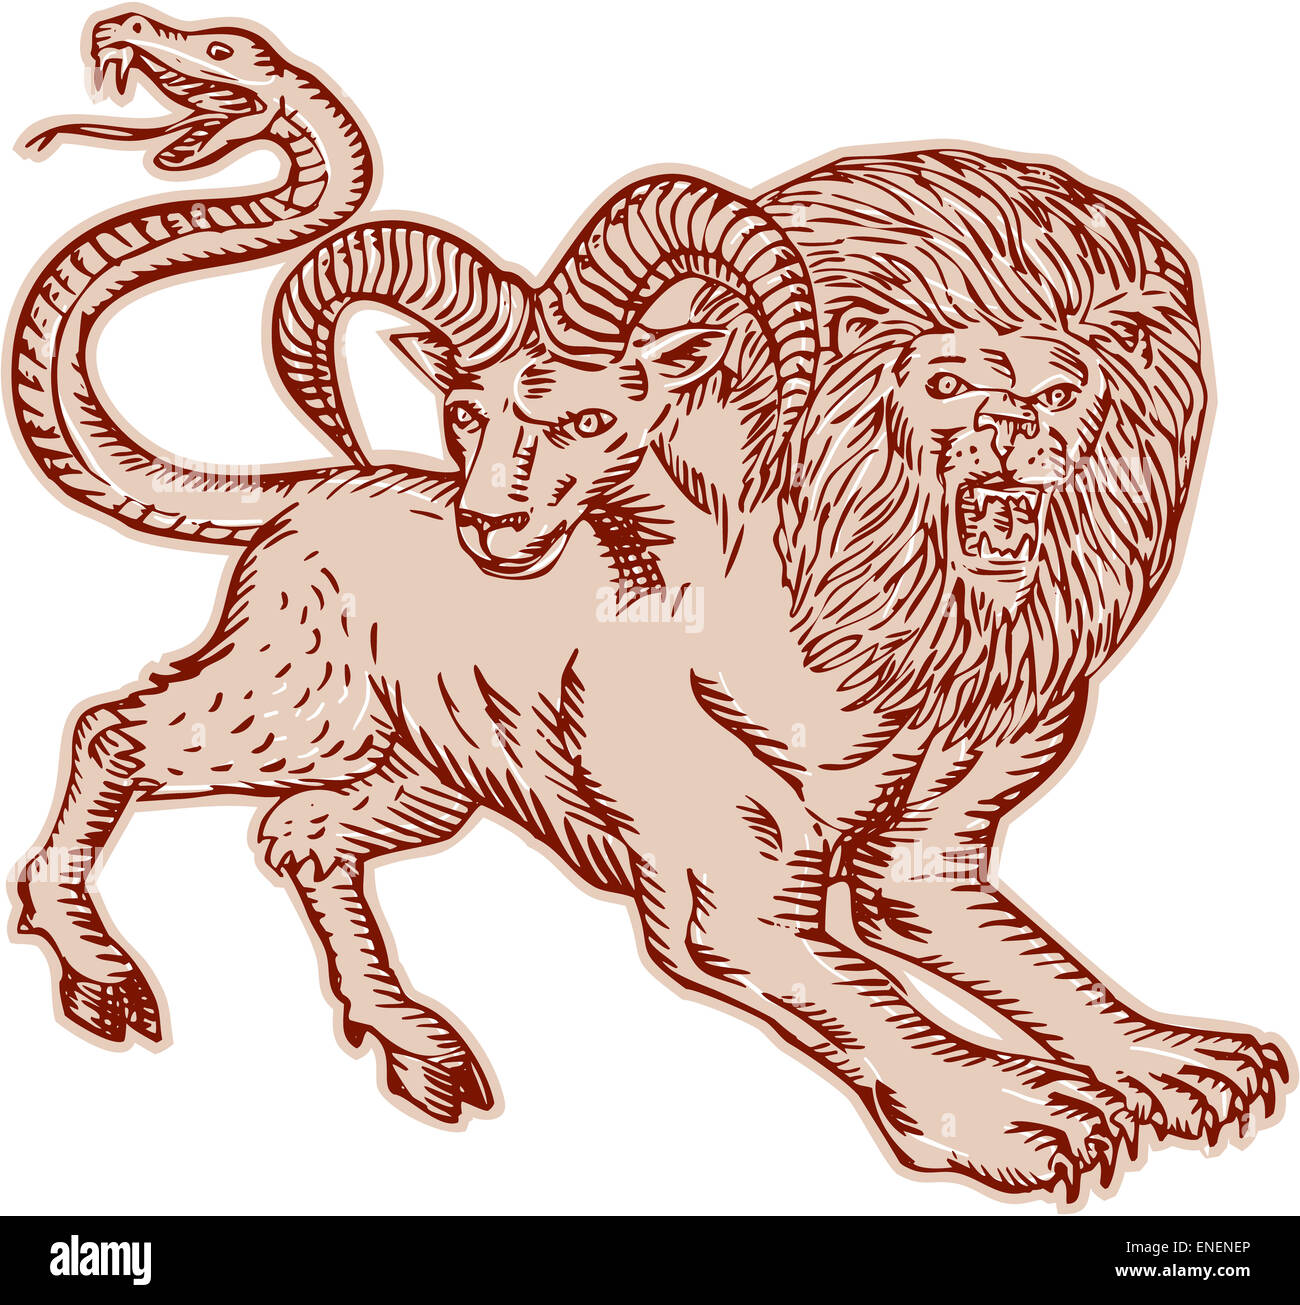 Gravure Gravure Illustration style fait main d'une chimère, créature mythique grec avec tête de lion et chèvre et la queue qui s'est terminée dans une tête du serpent vu de côté sur fond isolé. Banque D'Images